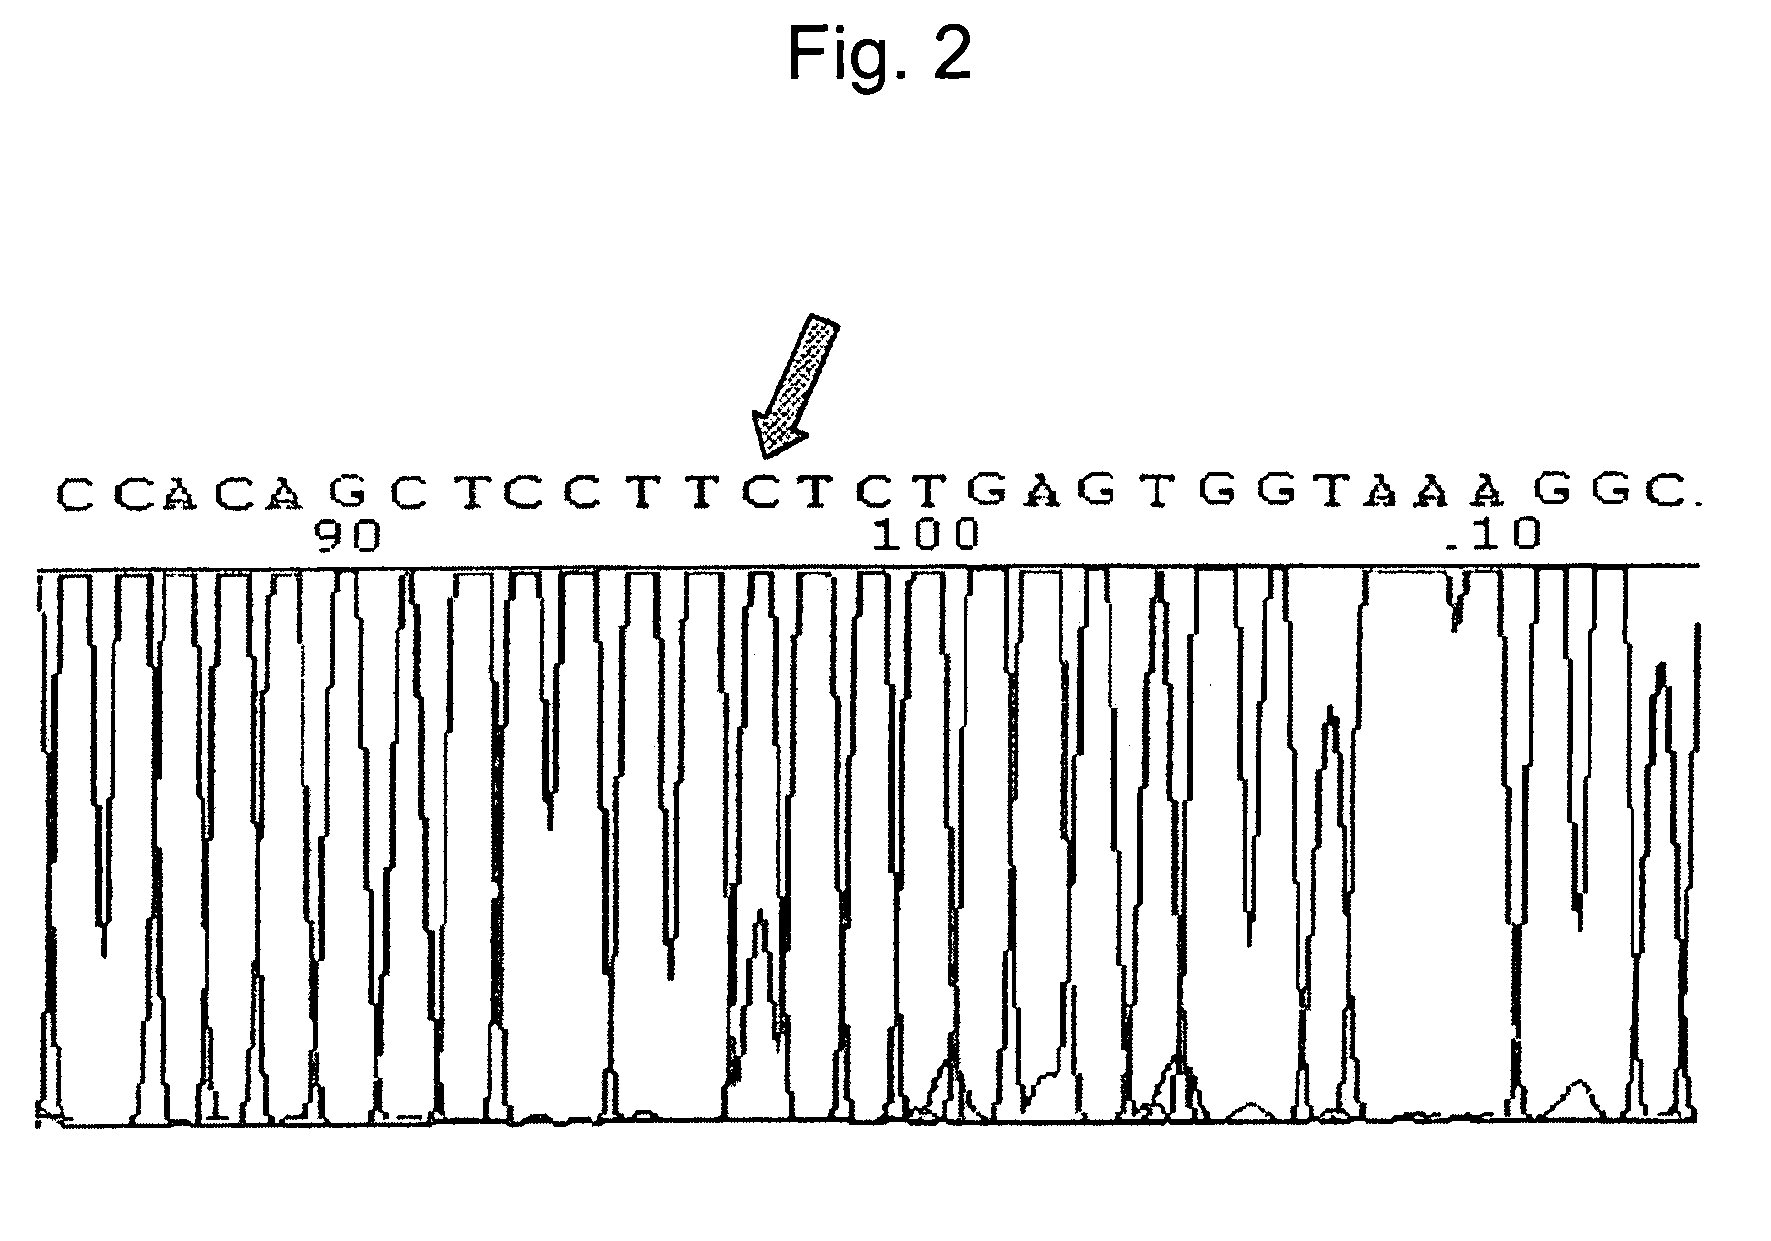 Β-catenin oligonucleotide microchip and method for detecting β-catenin mutations employing same